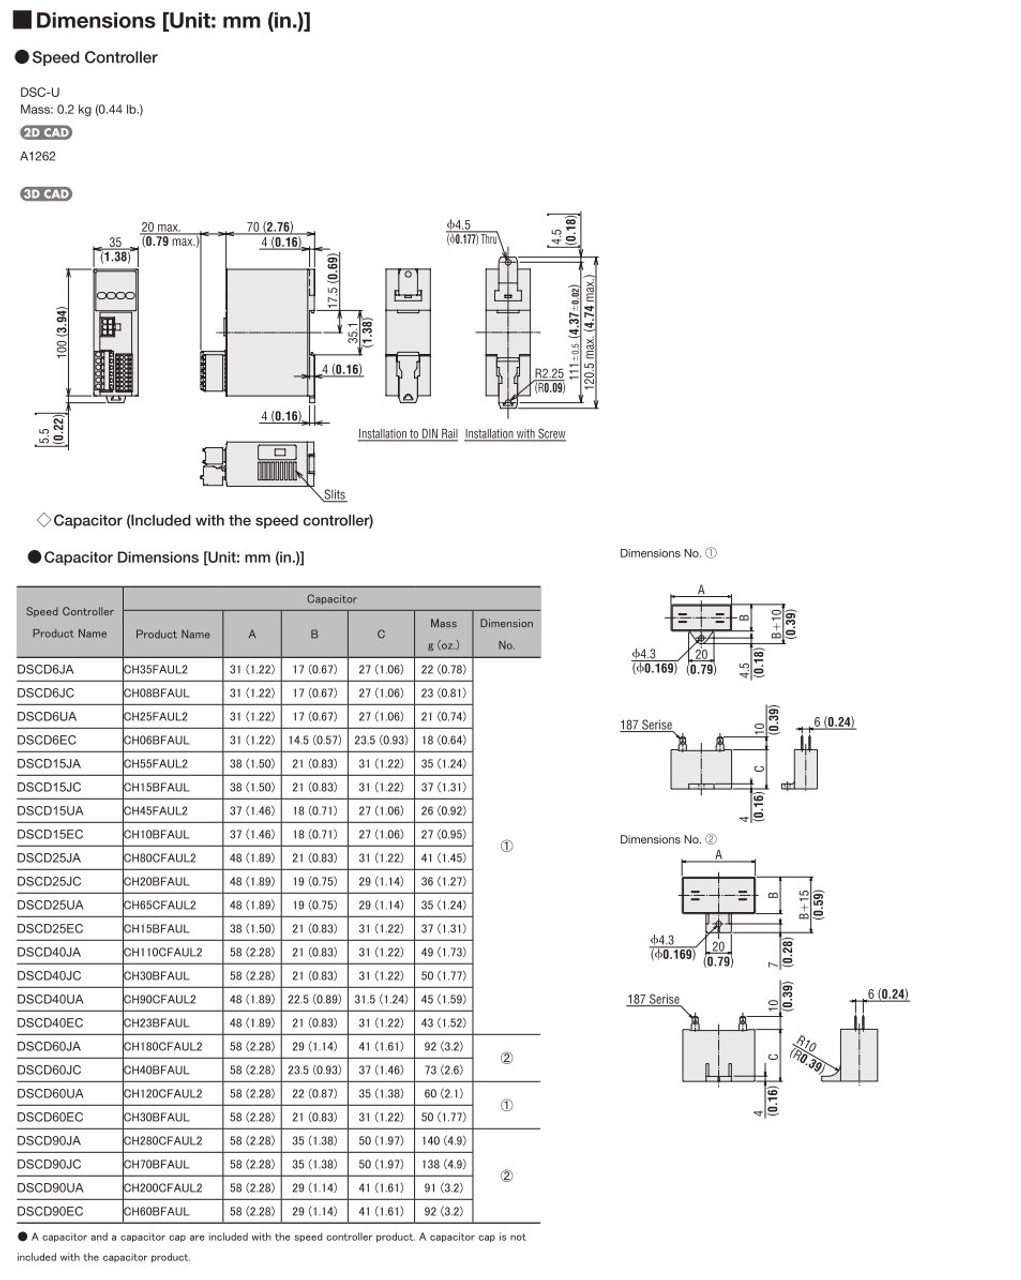 SCM315EC-75A / DSCD15EC - Dimensions